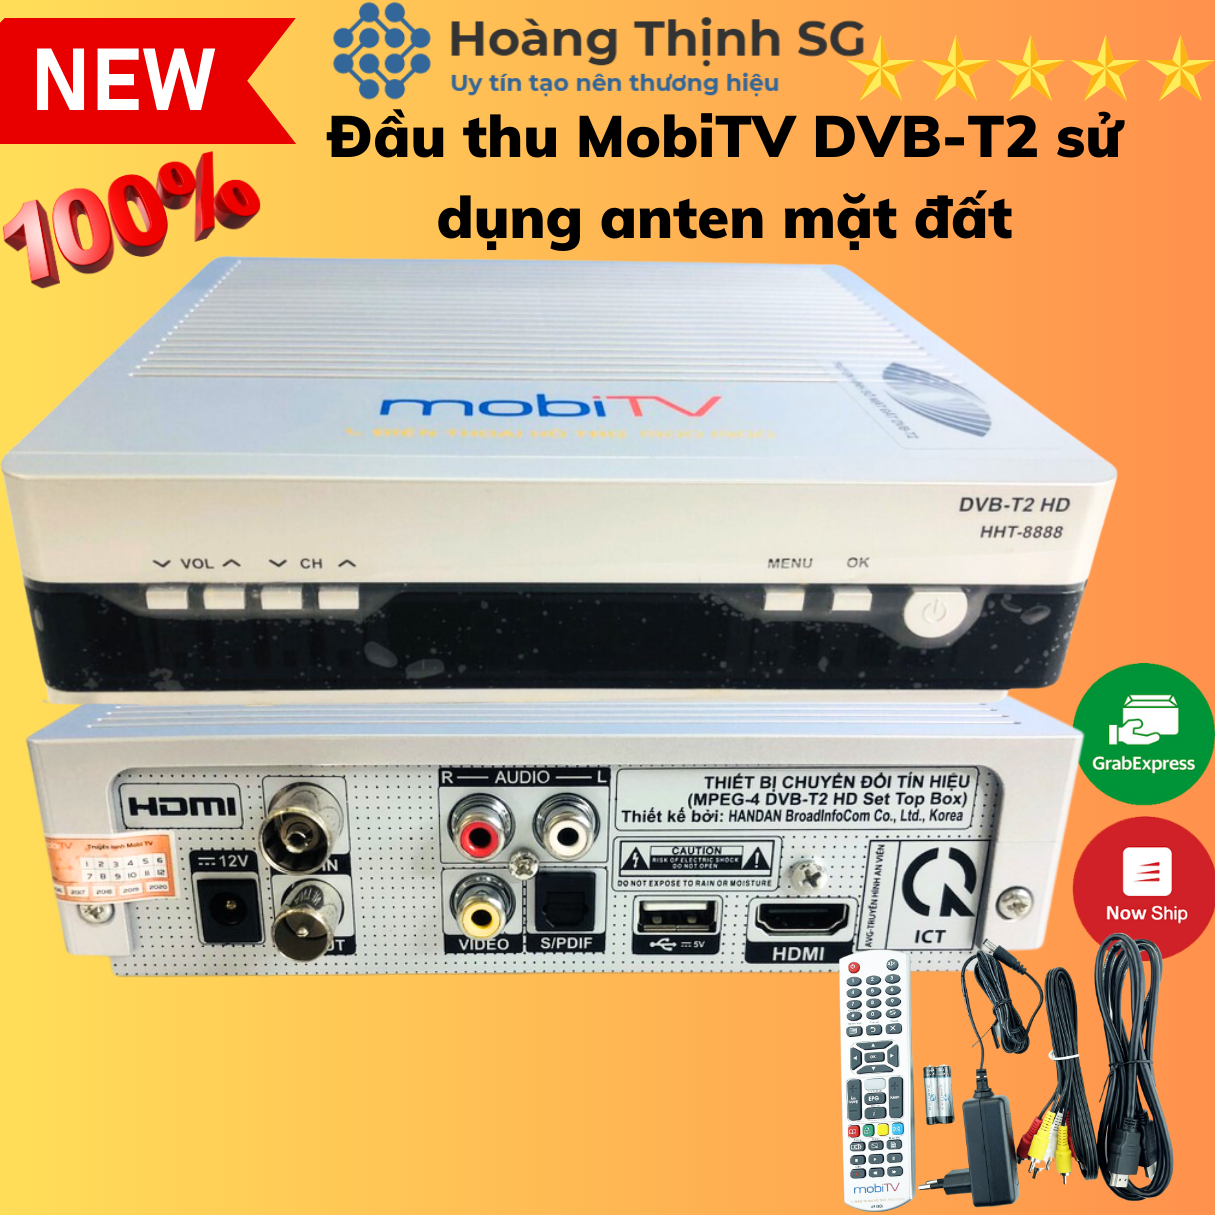 Đầu thu MobiTV DVB-T2 sử dụng anten mặt đất, đầu thu truyền hình KTS số mặt đất MobiTV, xem các kênh truyền hình HD